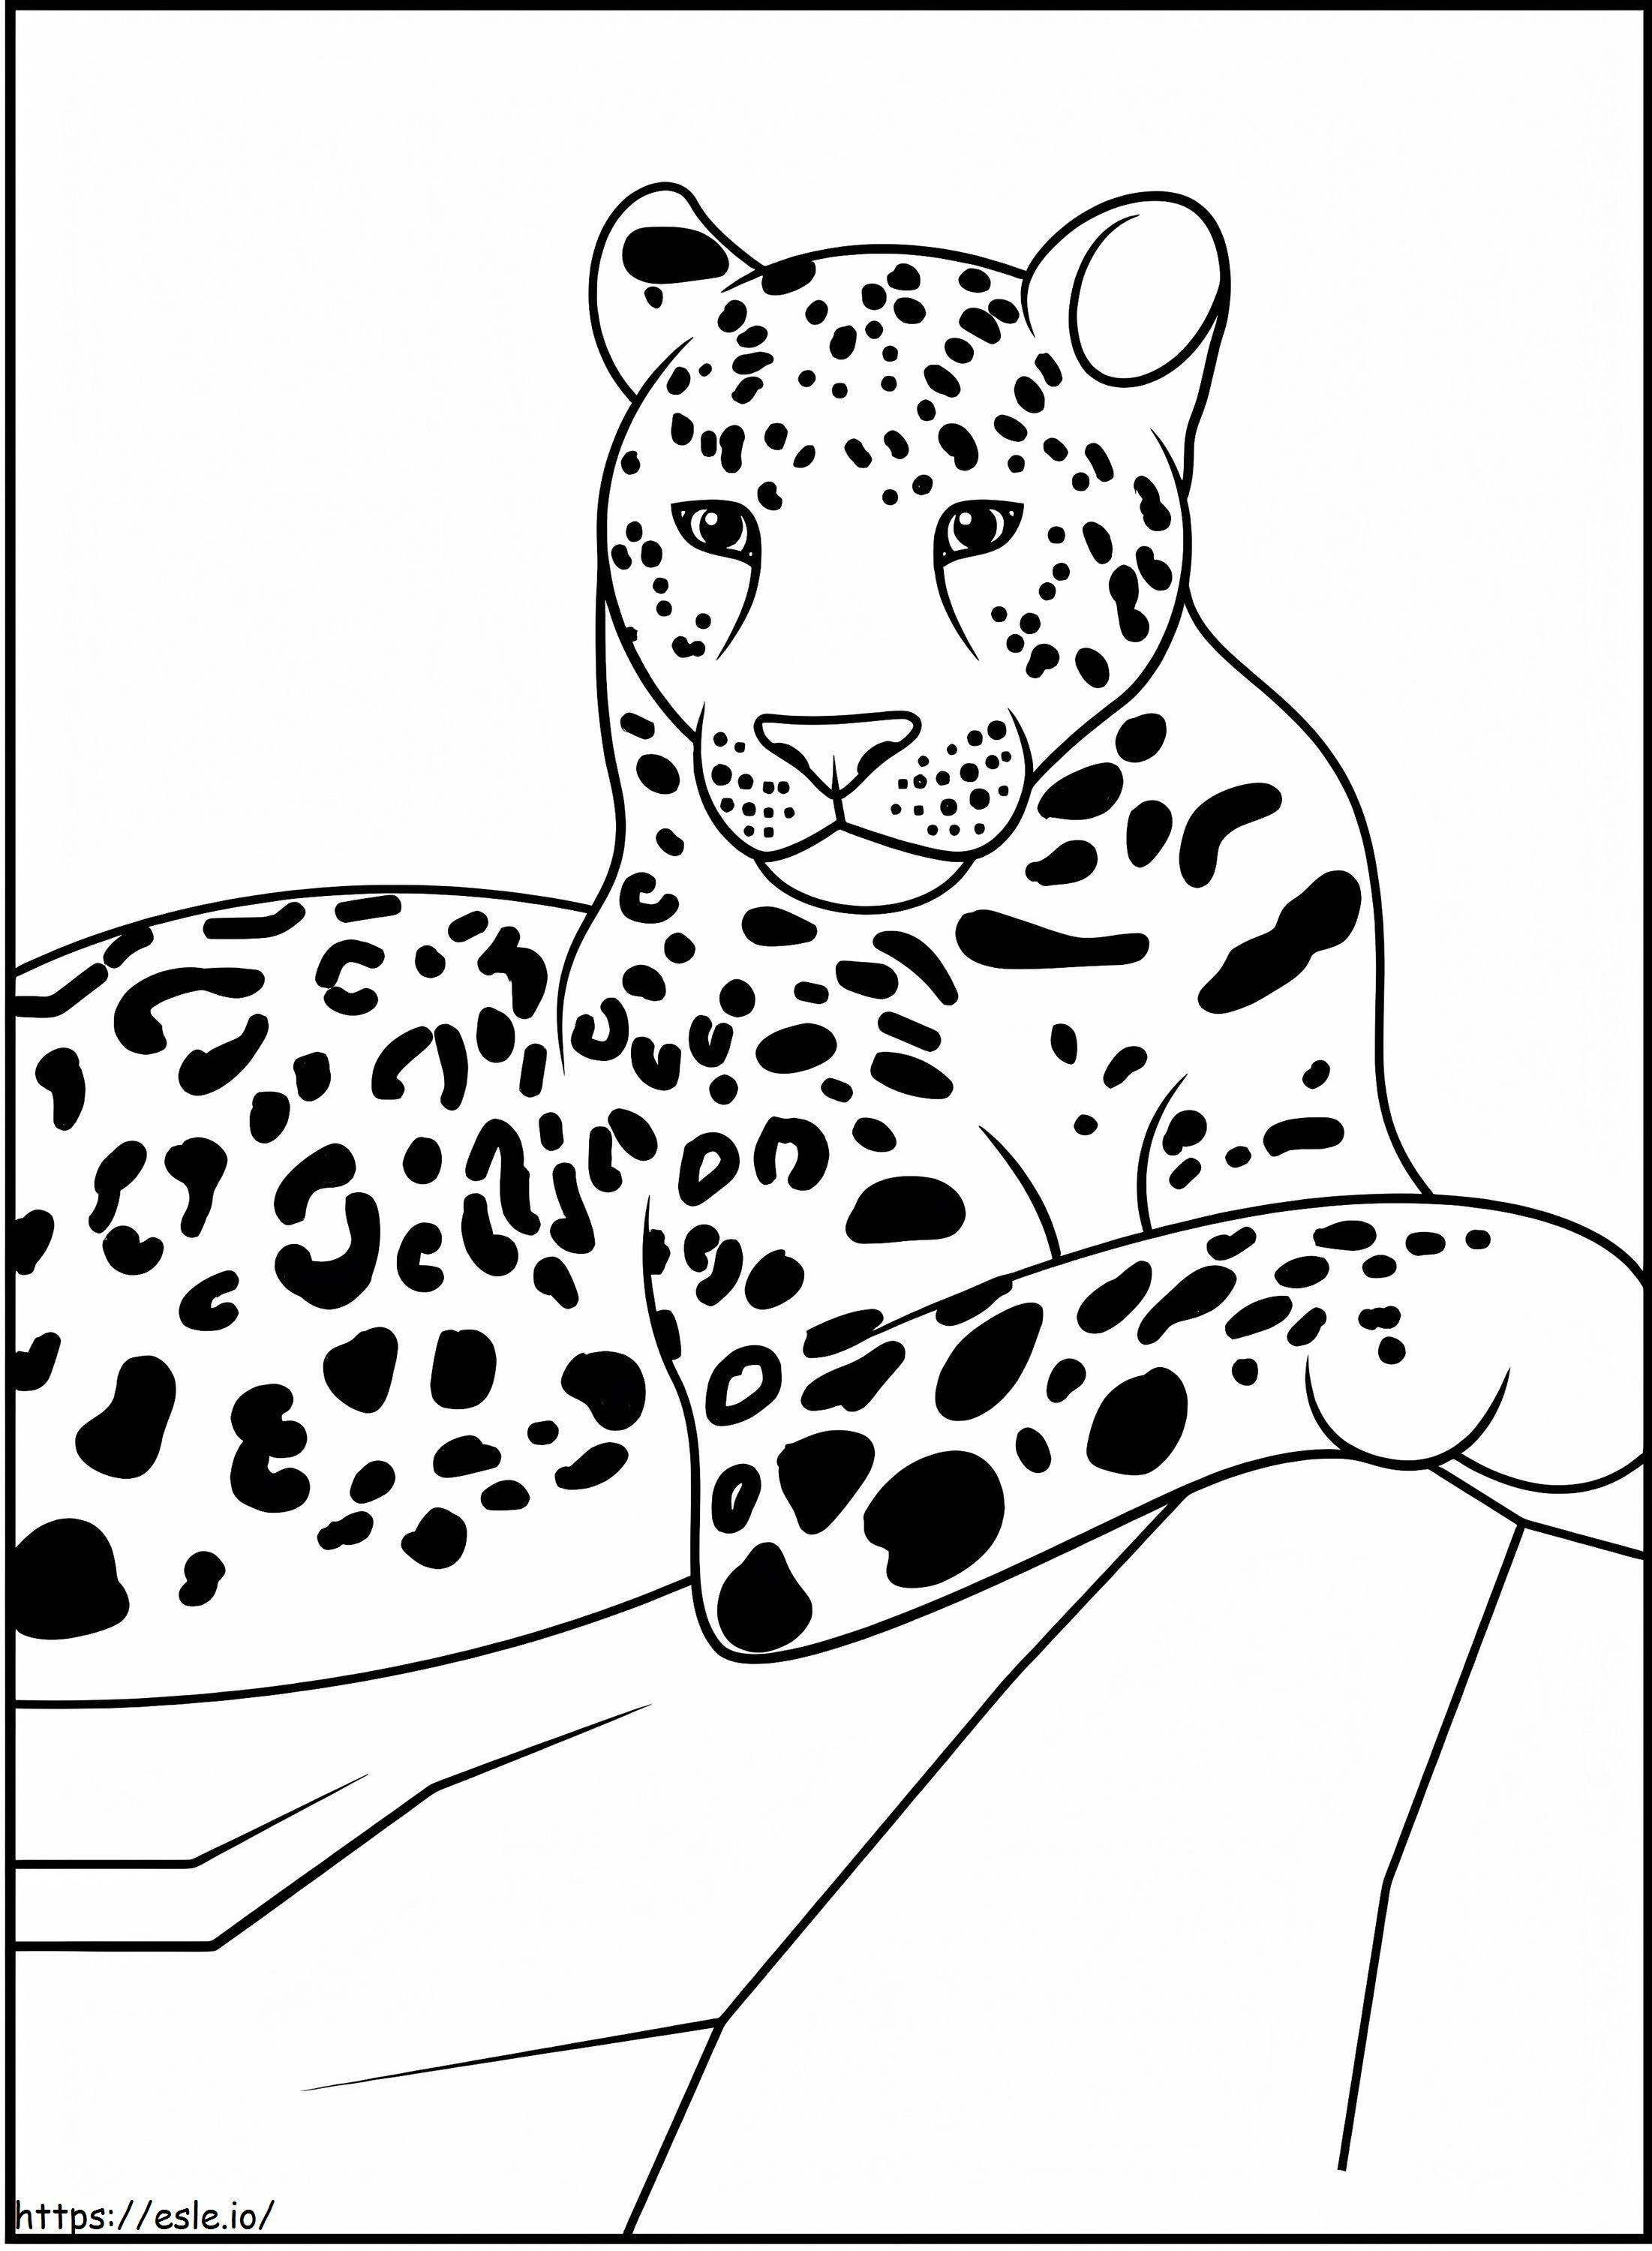 Leopardo 2 da colorare